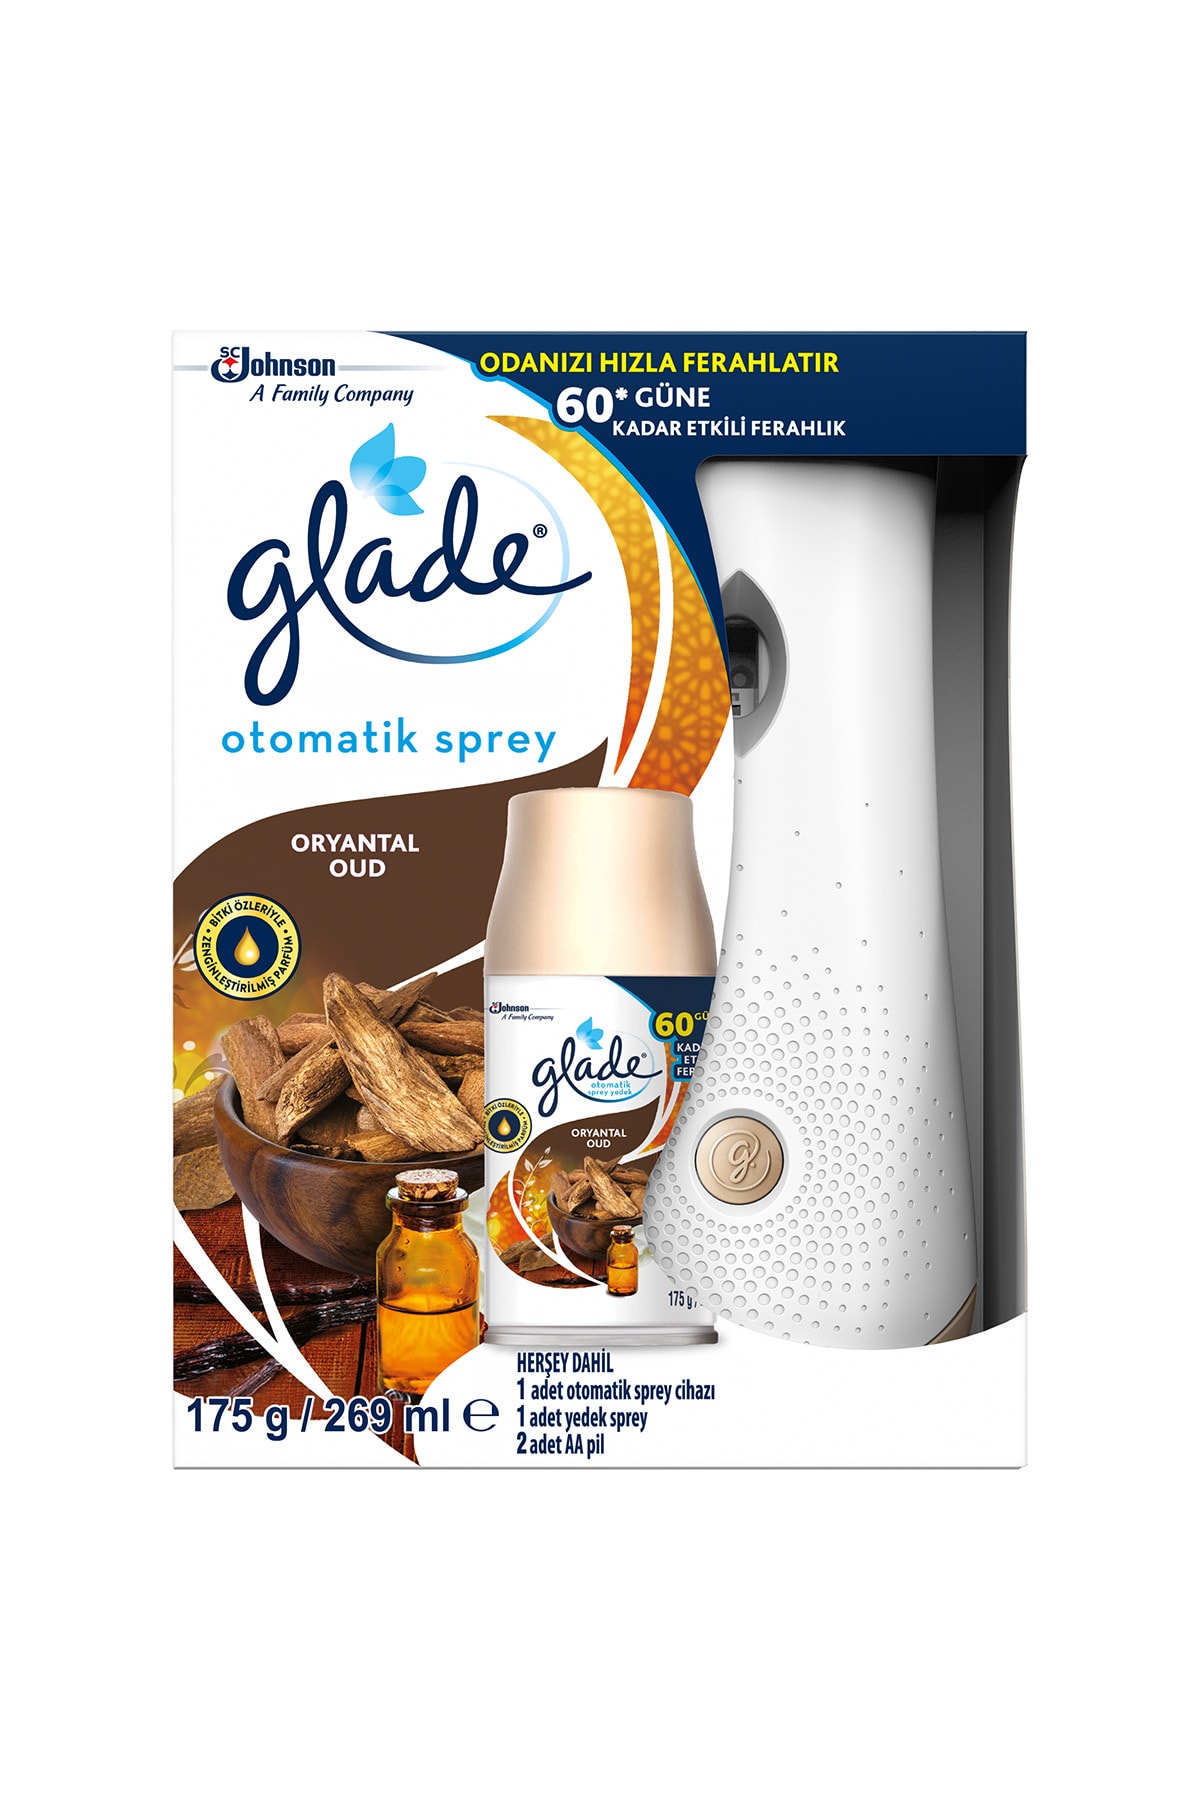 Glade ® Otomatik Sprey Tutucu ve Yedek Oryantal, 269ml